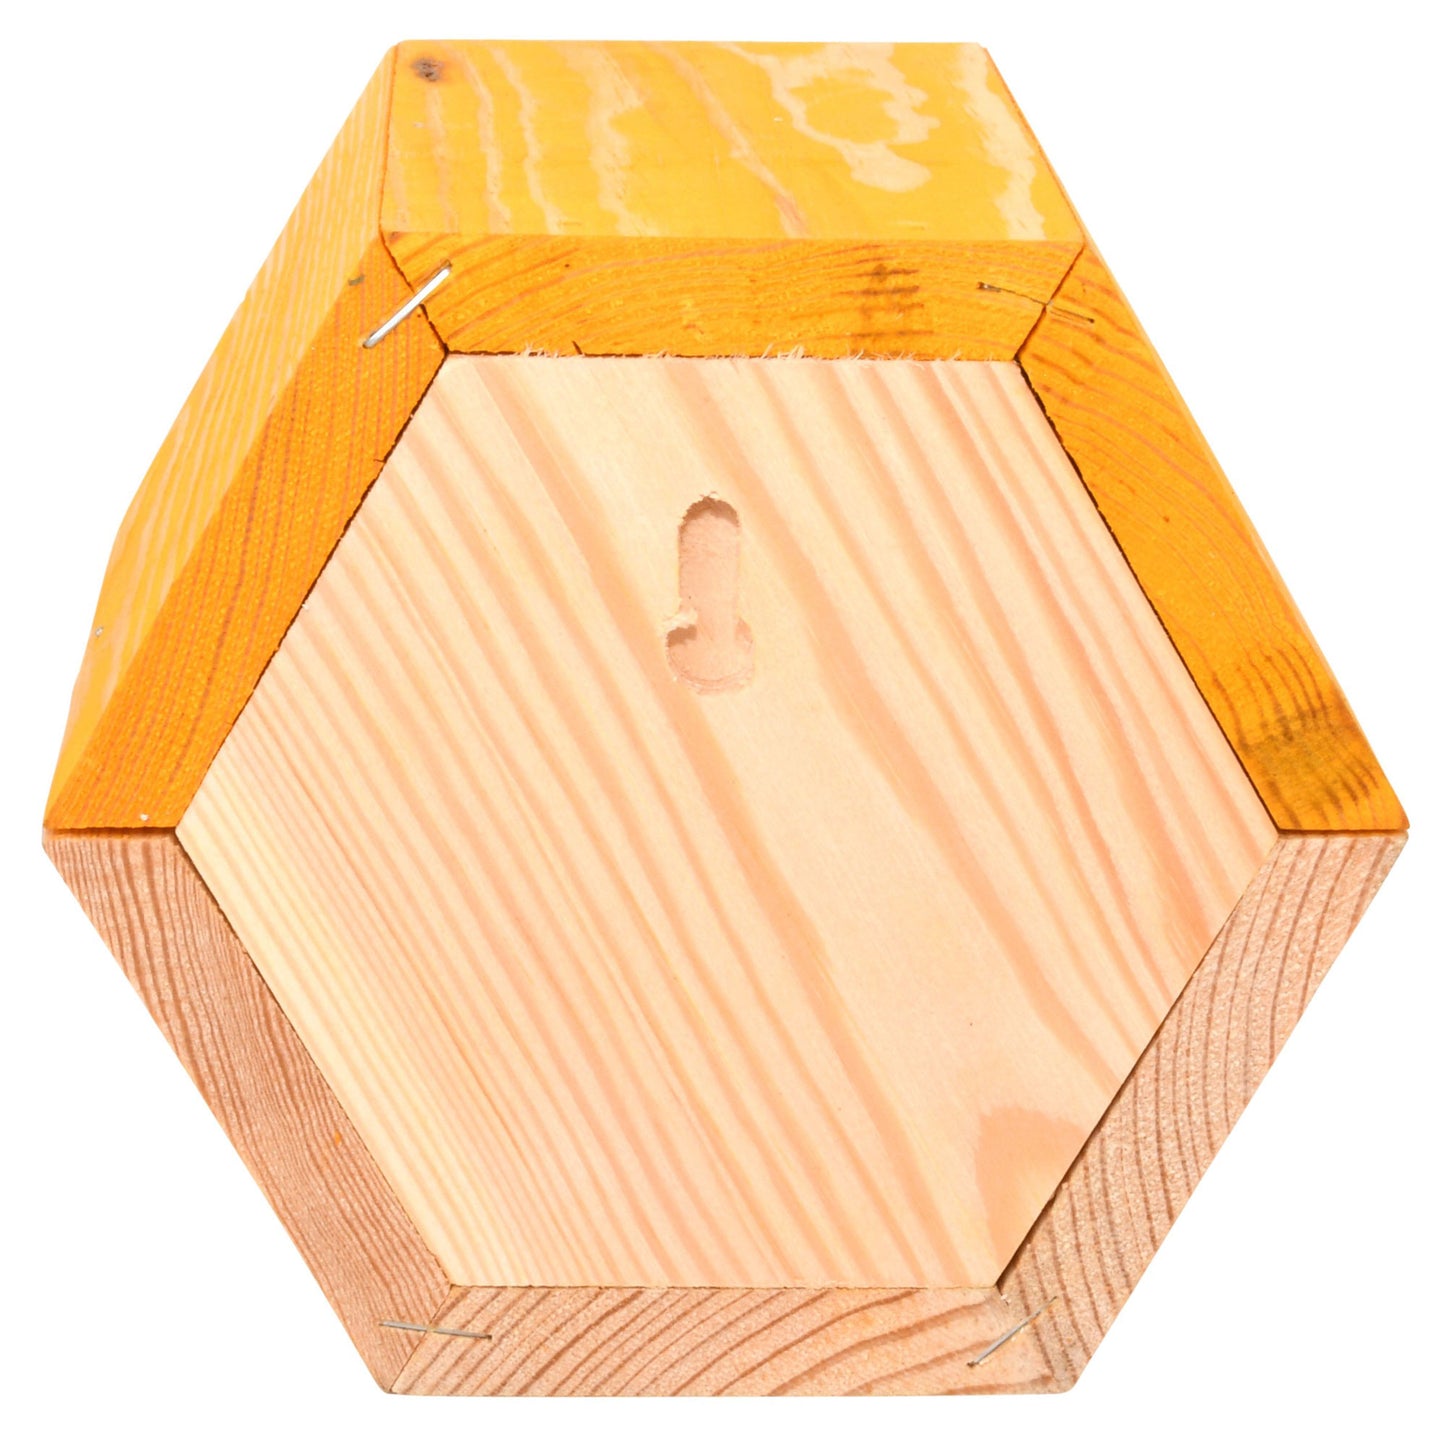 Hexagonal Wood Bee House